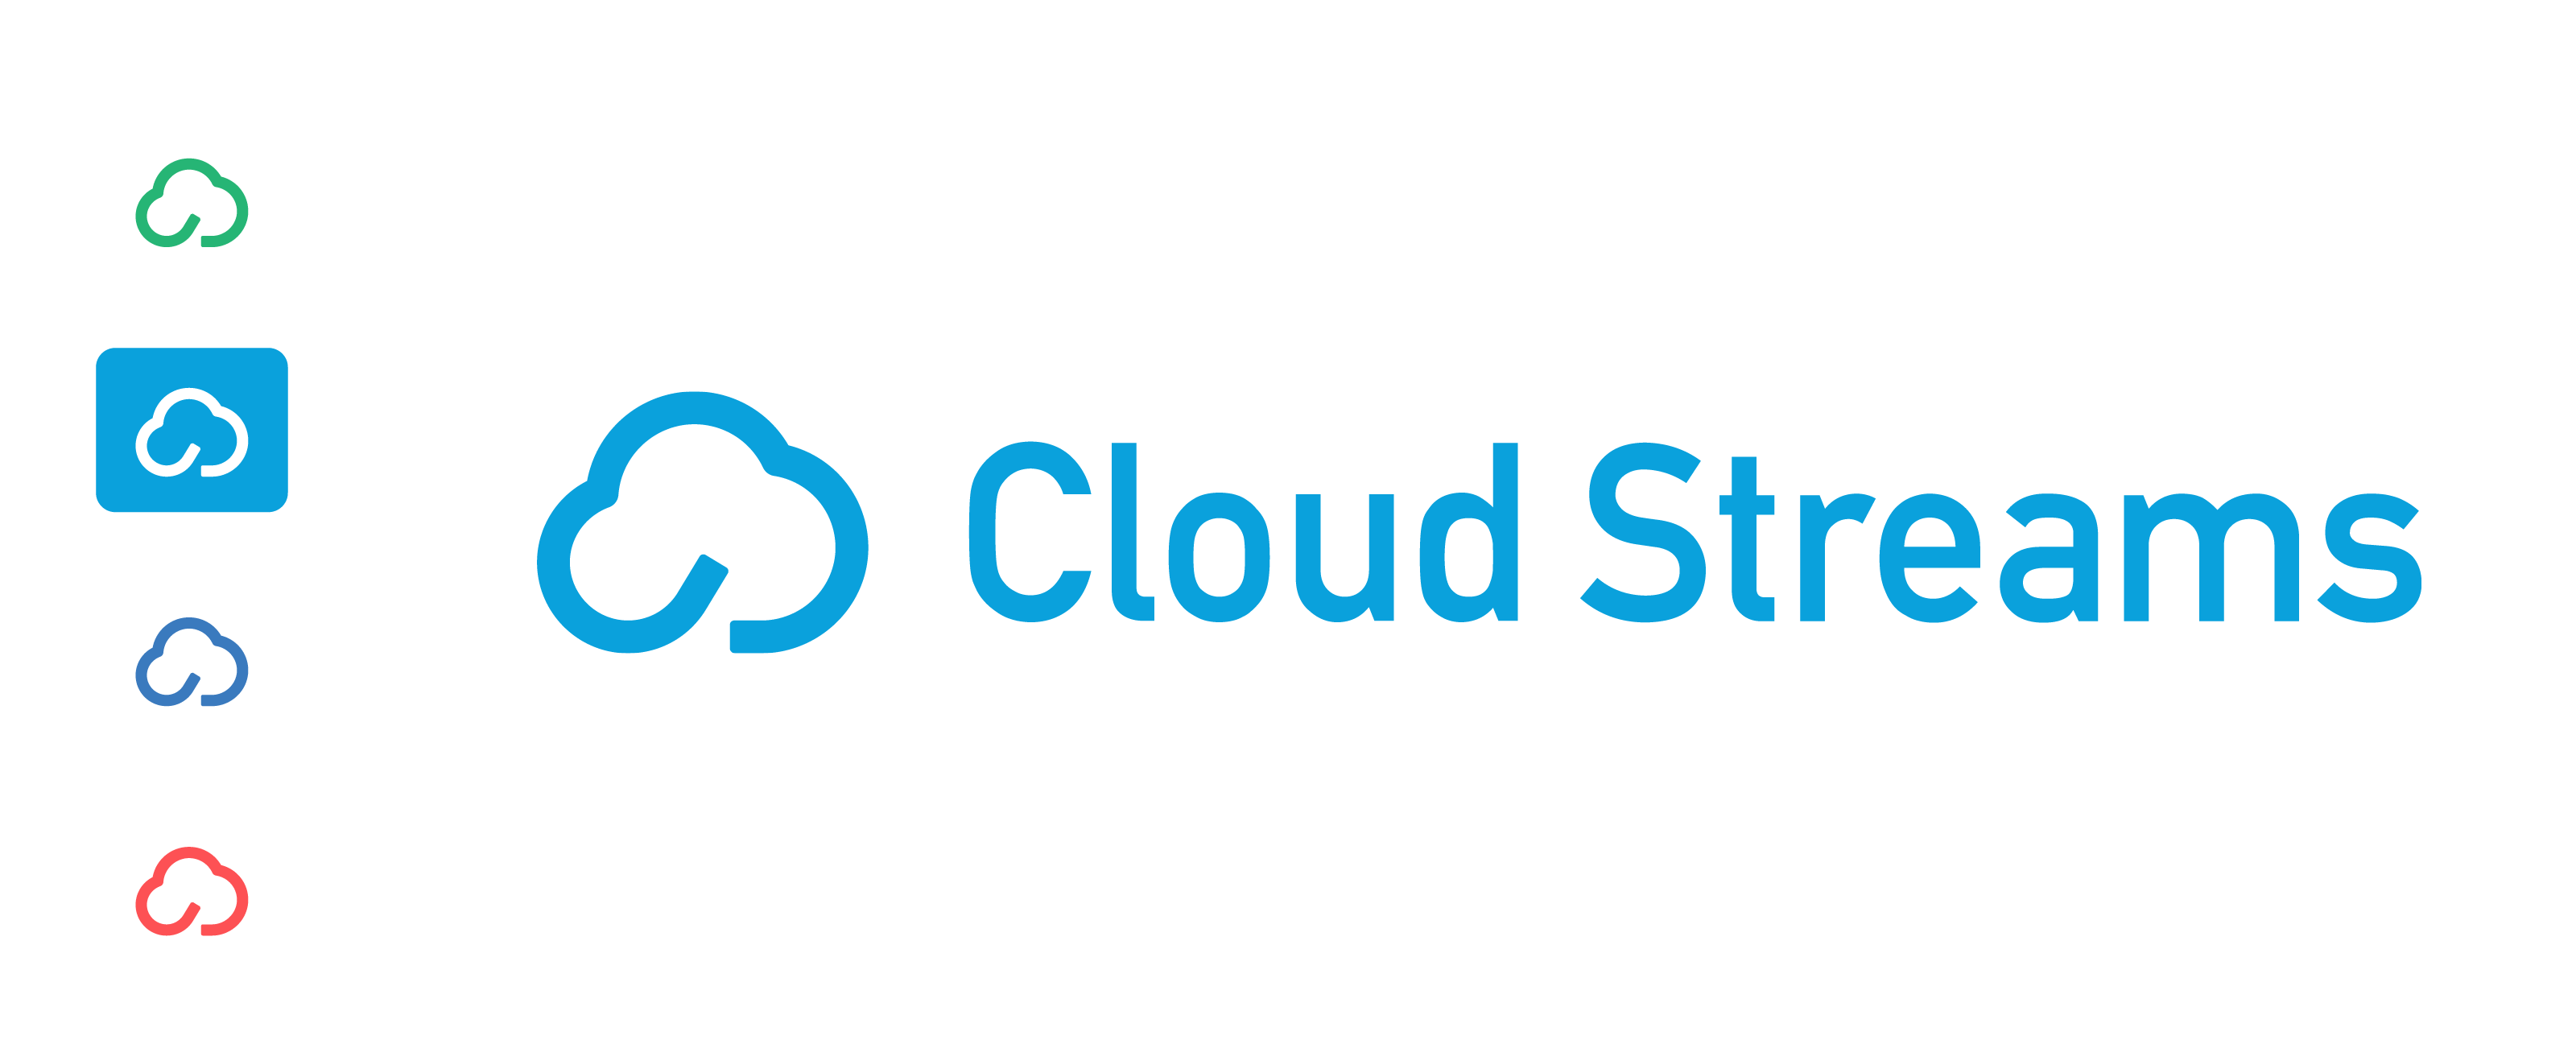 EcoSystem Cloud Streams@2x